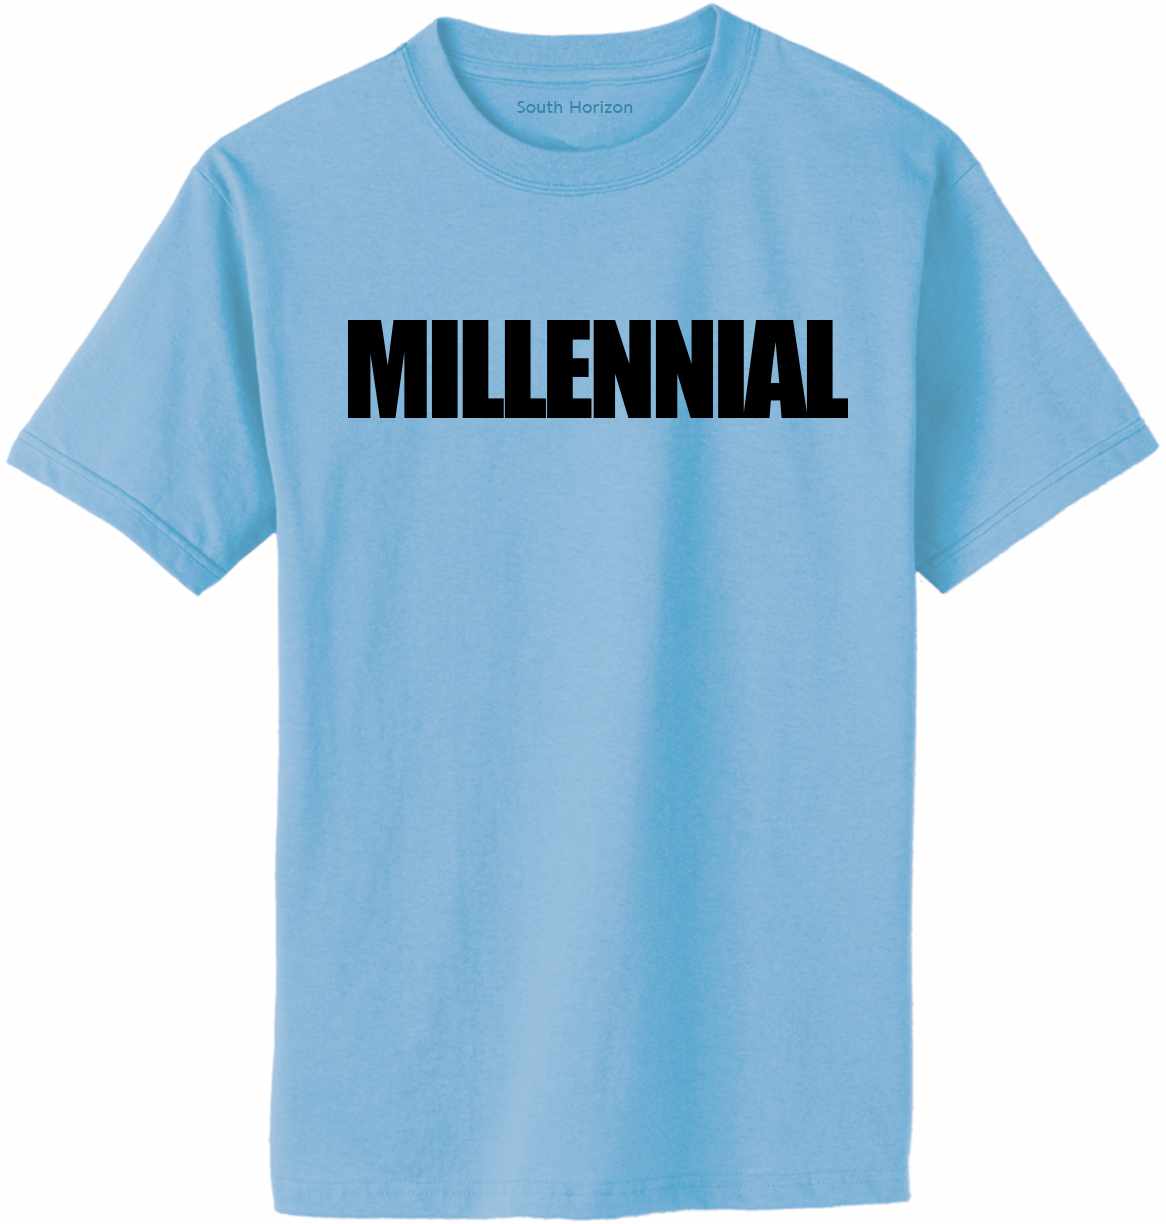 MILLENNIAL on Adult T-Shirt (#1240-1)